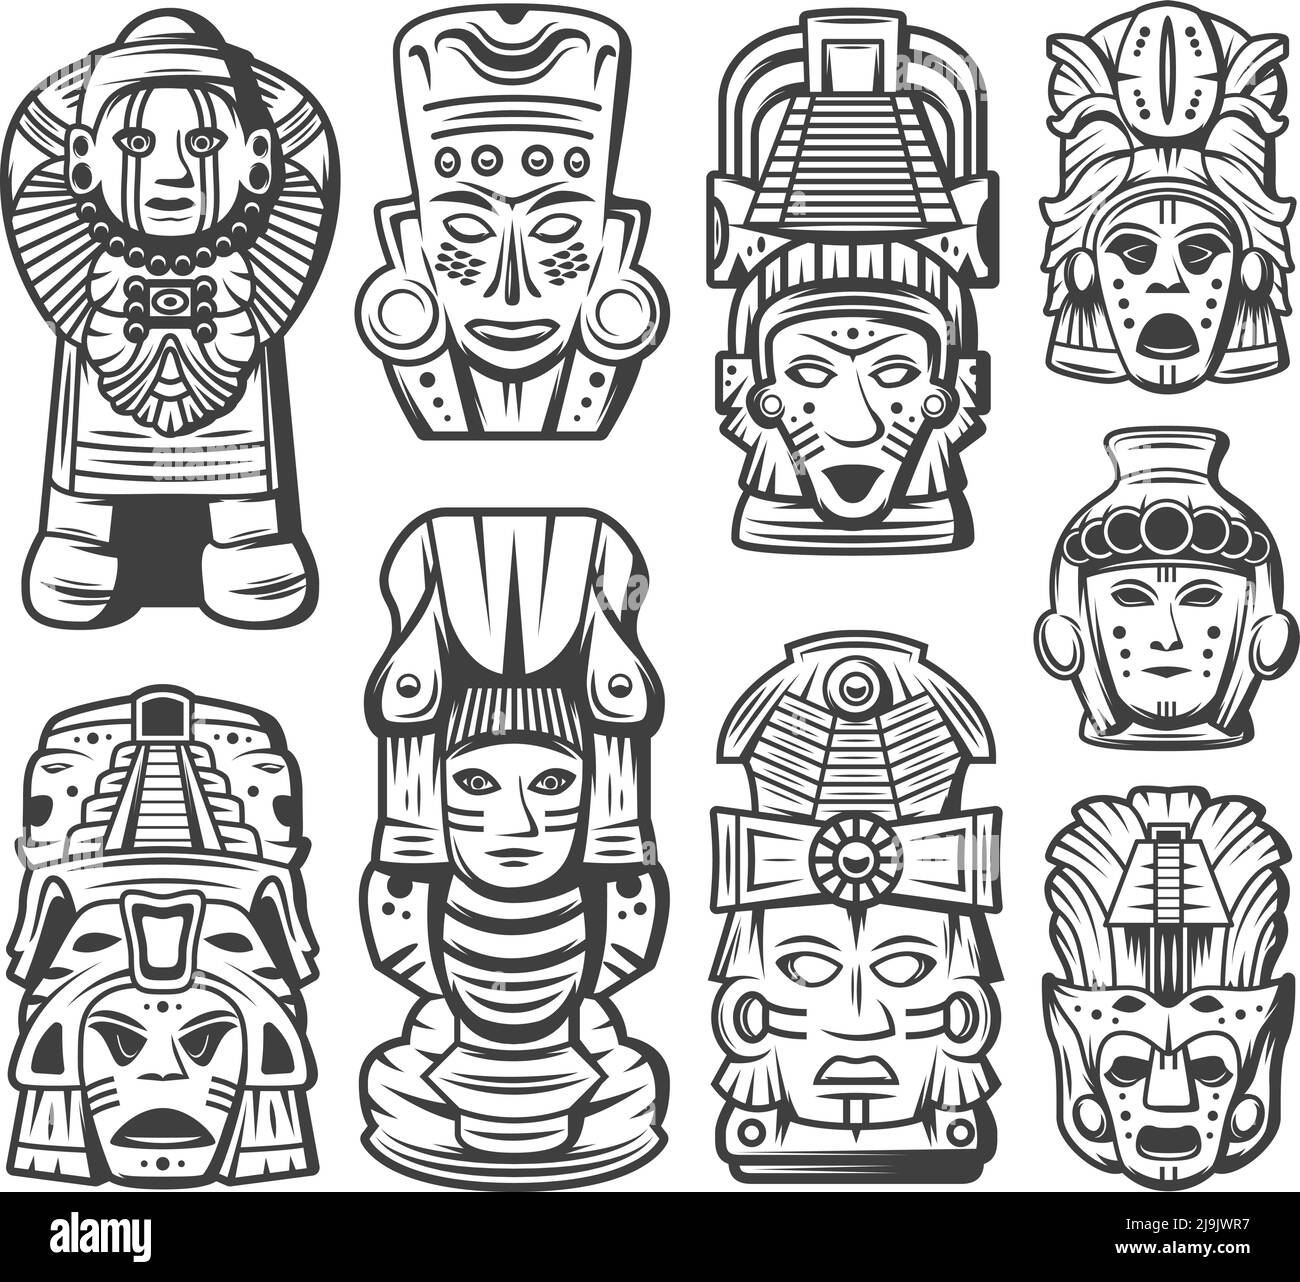 Collezione d'oggetti vintage monocromo della civiltà maya con maschere tribali cerimoniali e totem aztec illustrazione vettoriale isolata Illustrazione Vettoriale